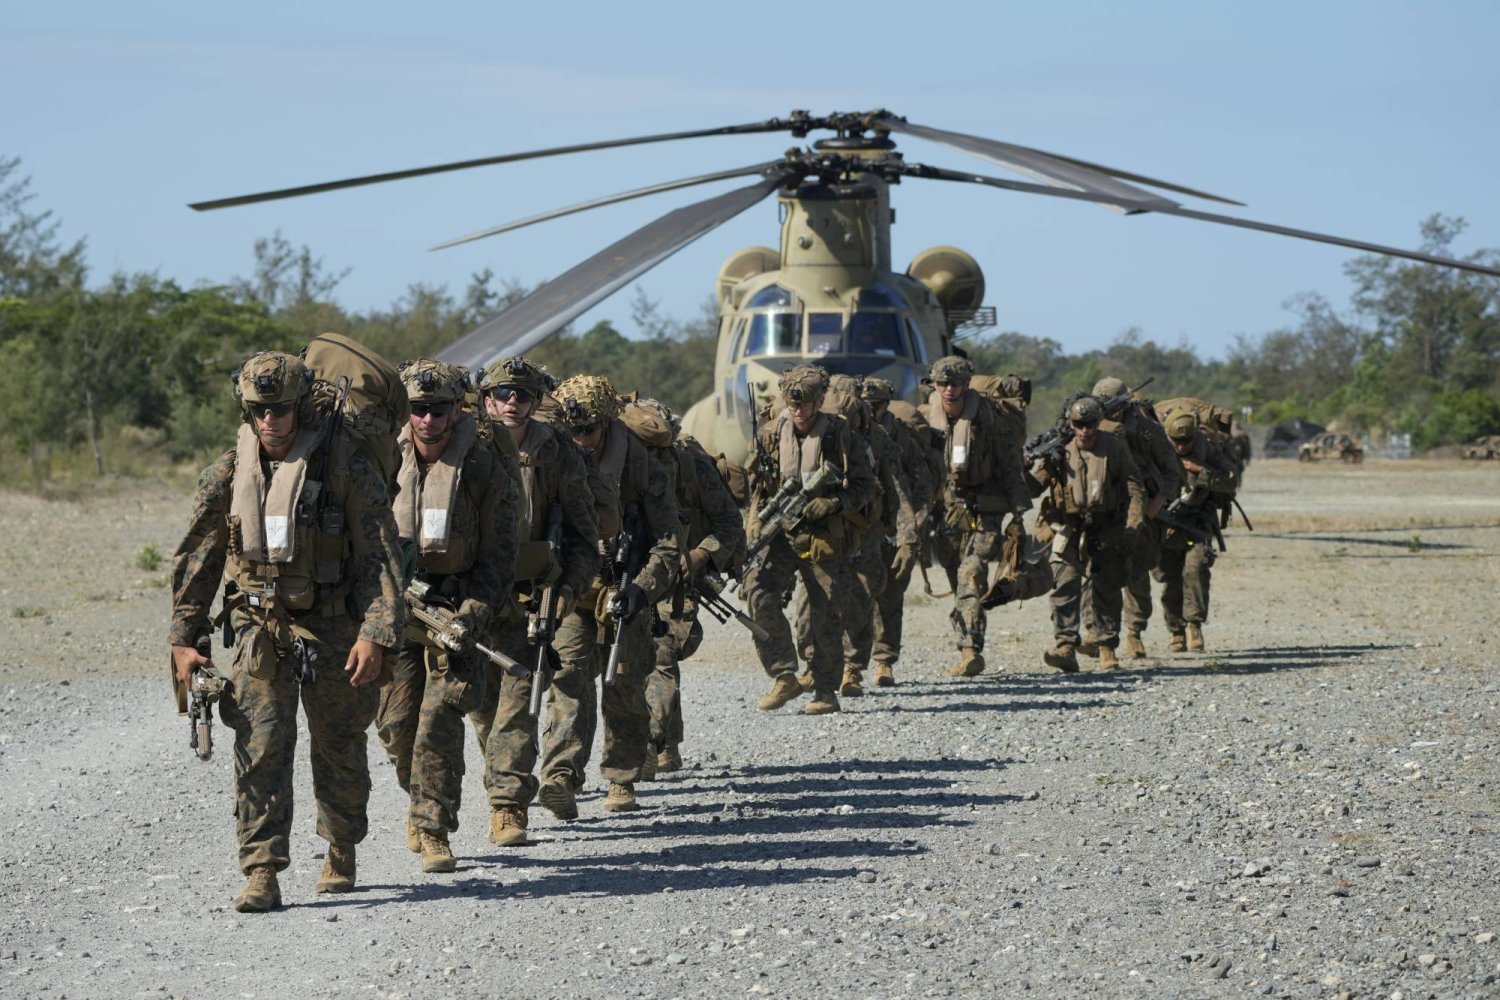 قوات أميركية تستعدّ للصعود إلى مروحيات عسكرية من طراز CH - 47 تابعة للجيش الأميركي في محطة باريديس الجوية في باسوكوين بمقاطعة إيلوكوس نورتي أثناء نقلها قوات أميركية وفلبينية خلال مناورة عسكرية مشتركة في شمال الفلبين الاثنين 6 مايو 2024 (أ.ب)